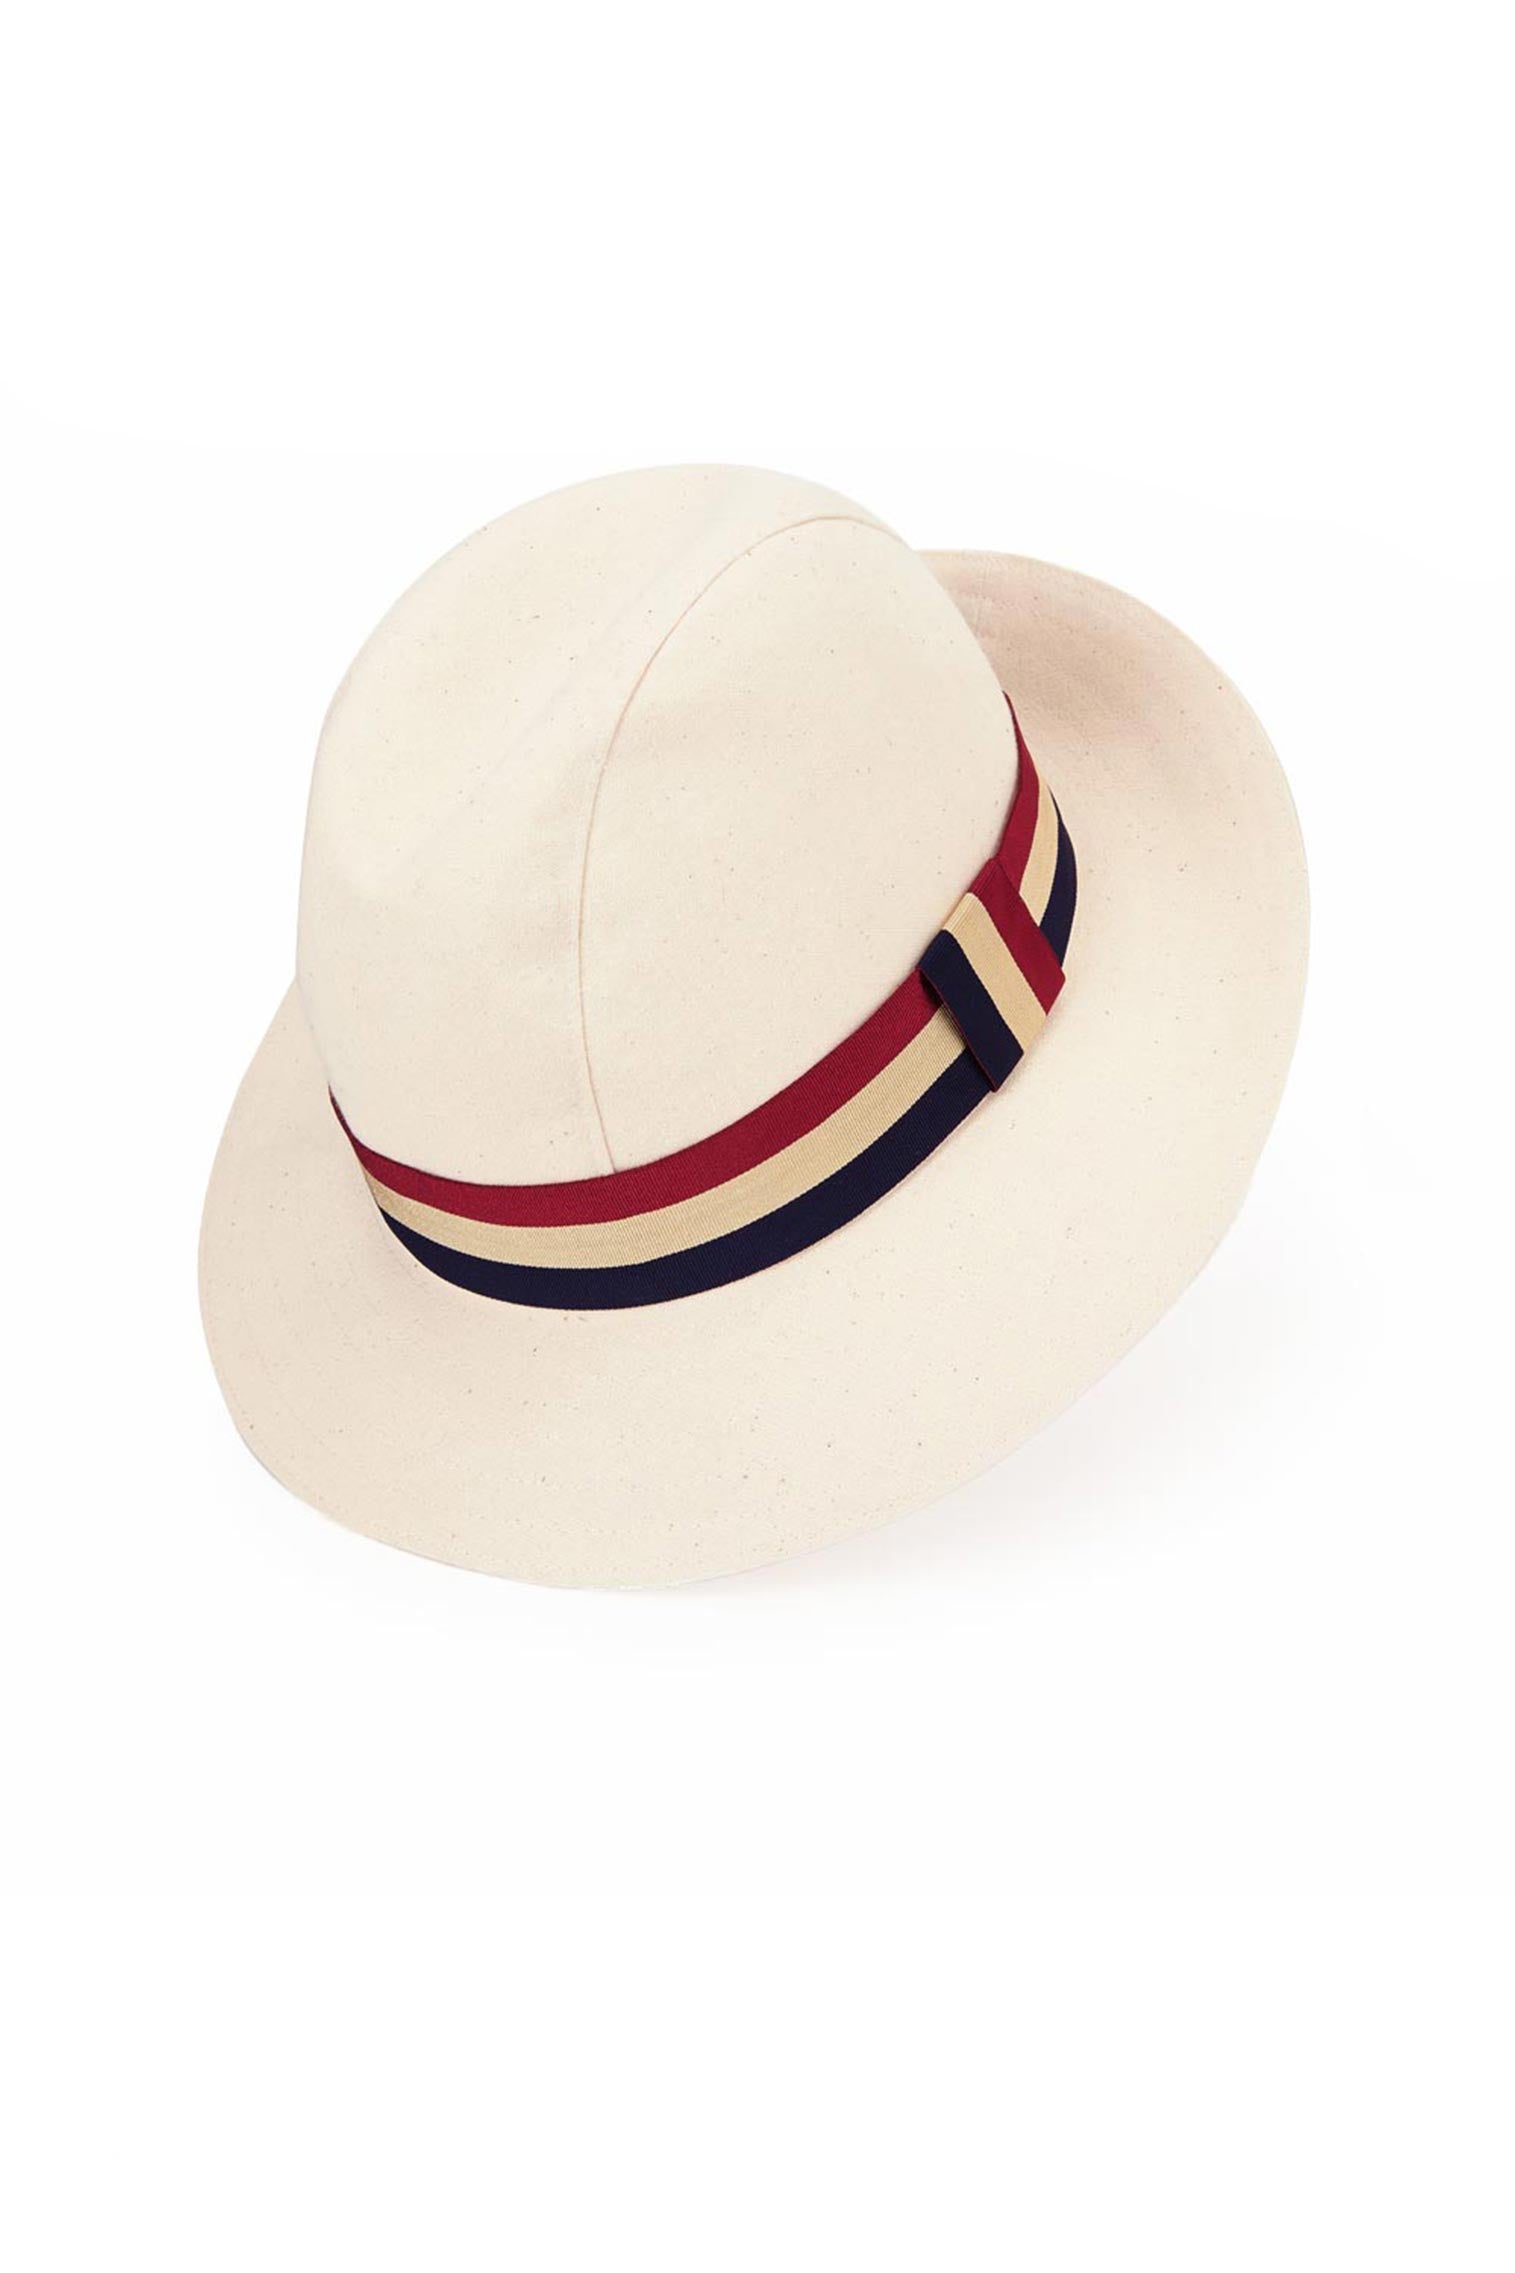 Monaco Hat - Products - Lock & Co. Hatters London UK